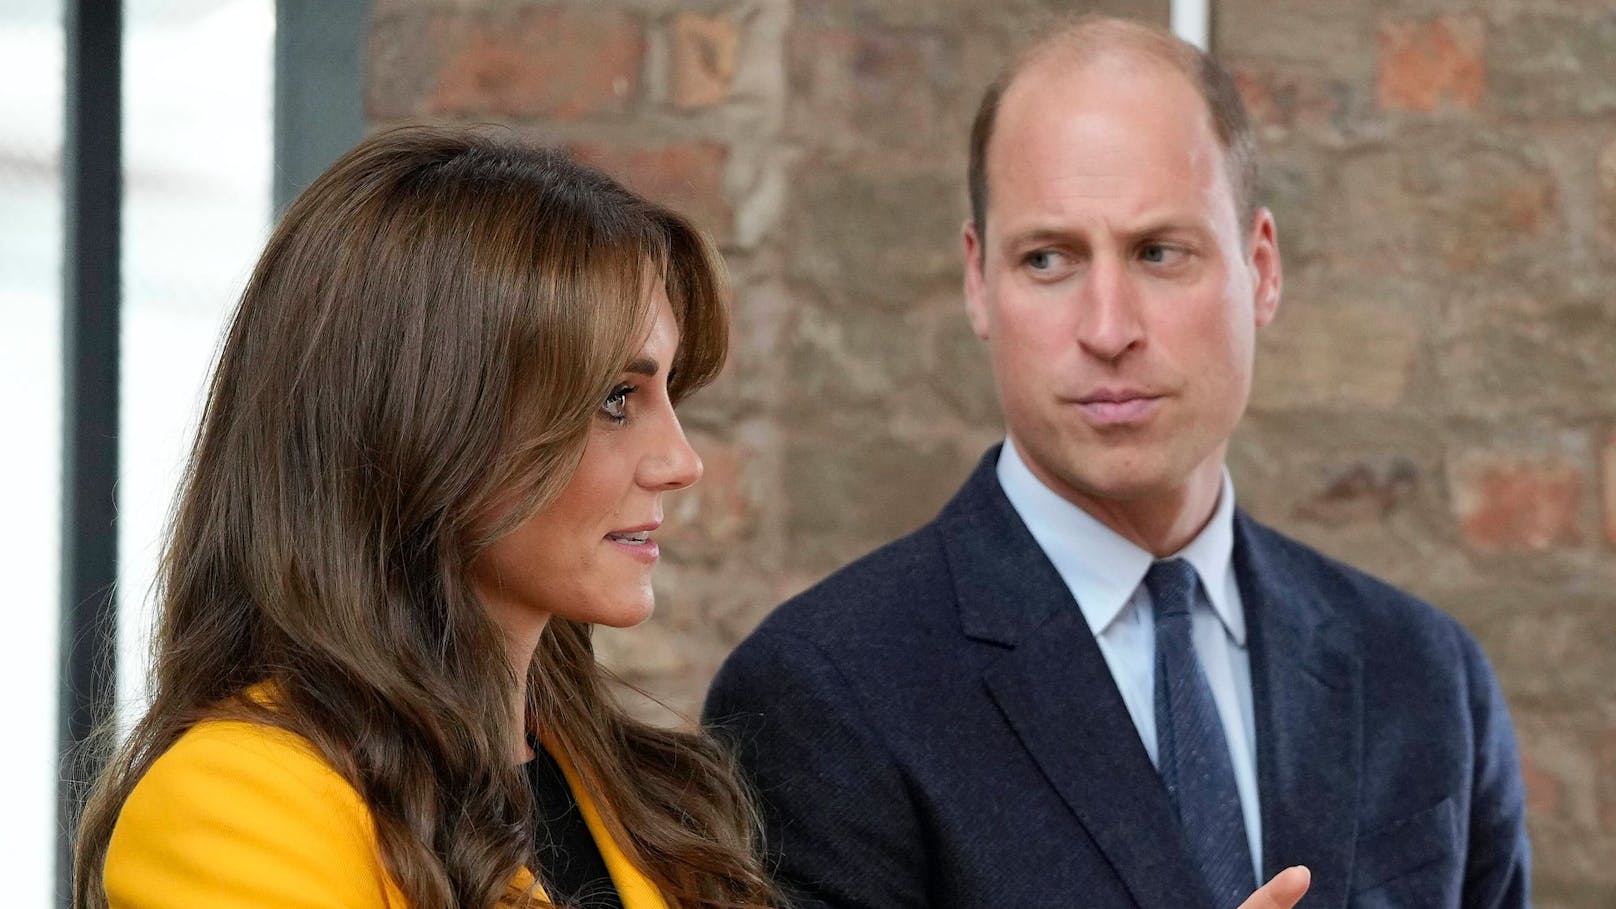 Prinz William unter Druck: "Er wird gerade zerrissen"